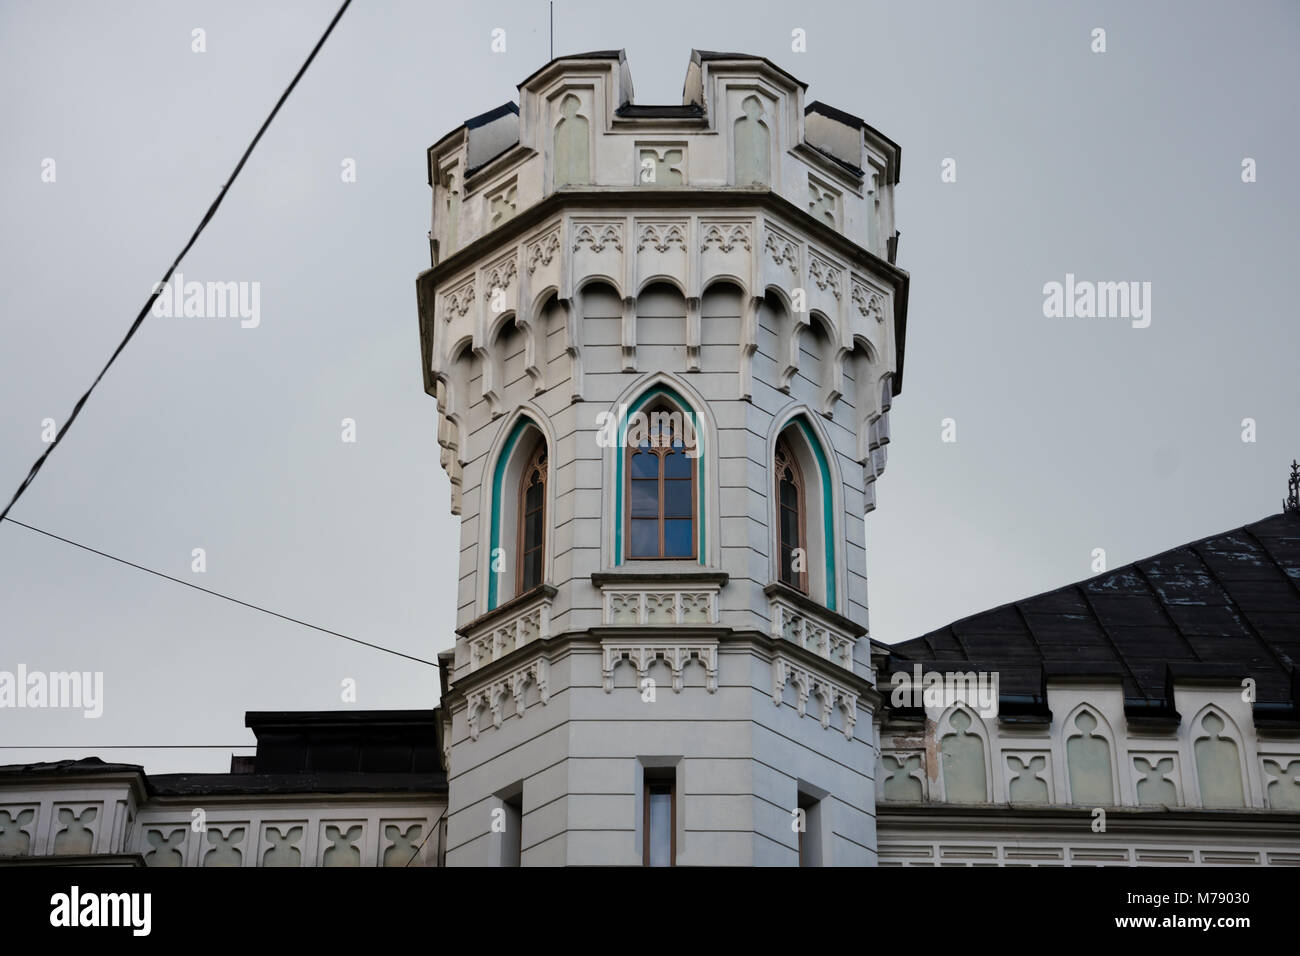 Small Guild Tower (Maza Gilde). Neo gothic style architecture. Riga, Latvia Stock Photo